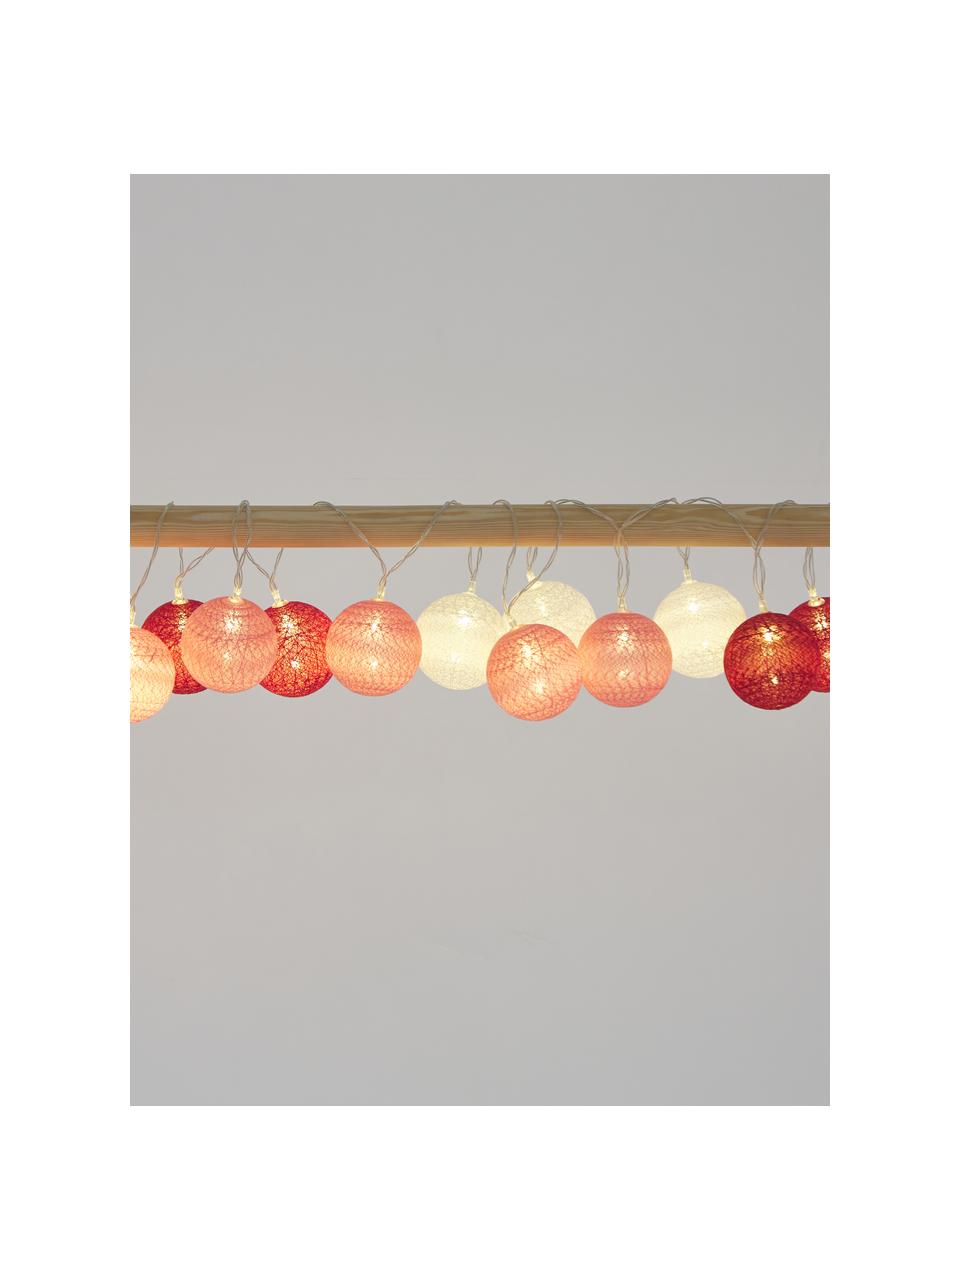 Girlanda świetlna LED Bellin, dł. 320 cm i 20 lampionów, Różowy, ciemny czerwony, biały, D 320 cm